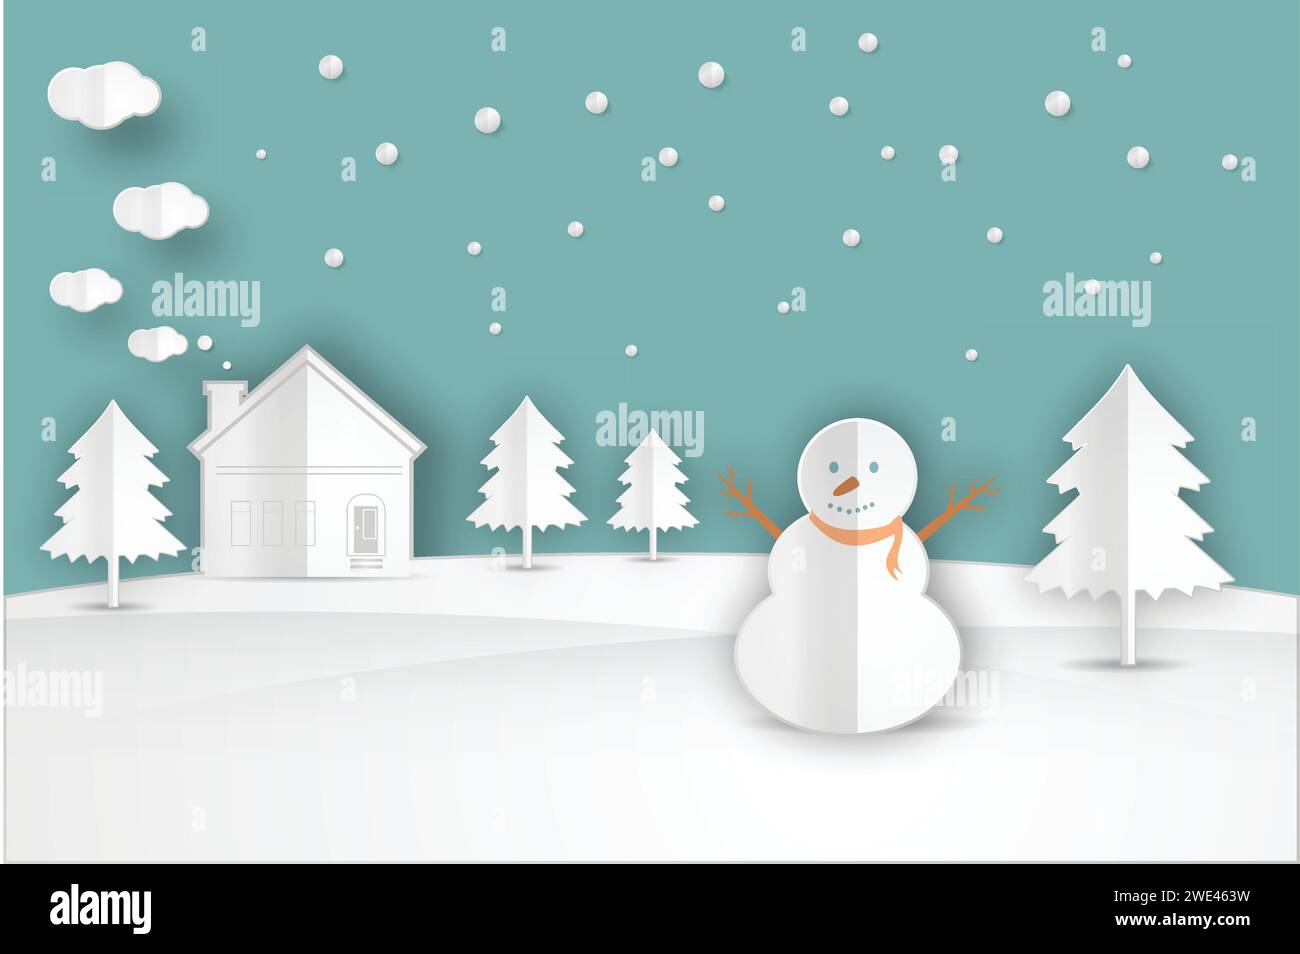 Natura, taglio di carta e artigianato paesaggio invernale con alberi di Natale, pupazzi di neve, neve. Scheda felice anno nuovo su sfondo blu illustrazione vettoriale Illustrazione Vettoriale